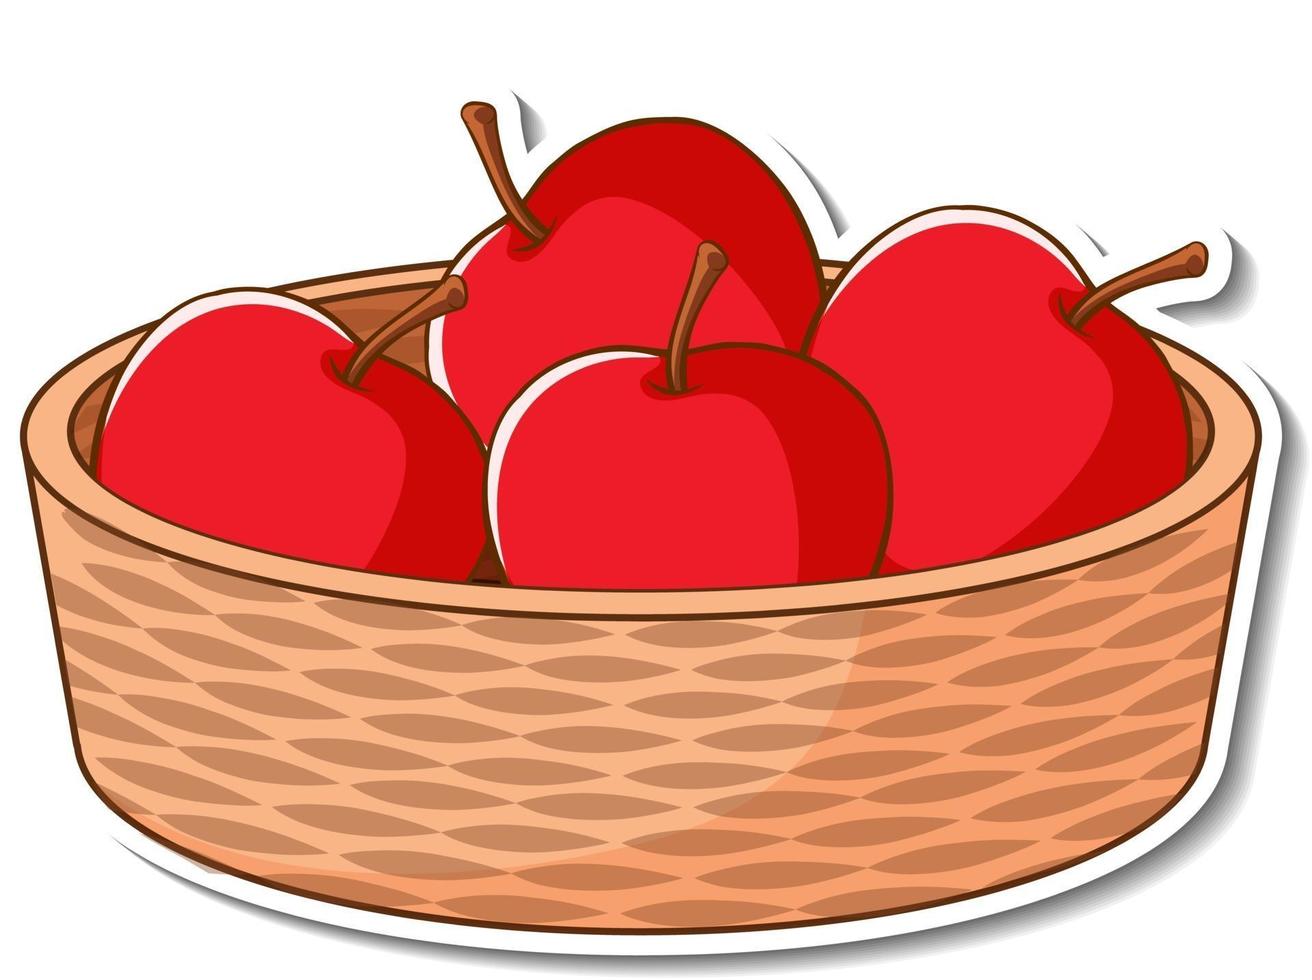 stickermand met veel rode appels vector